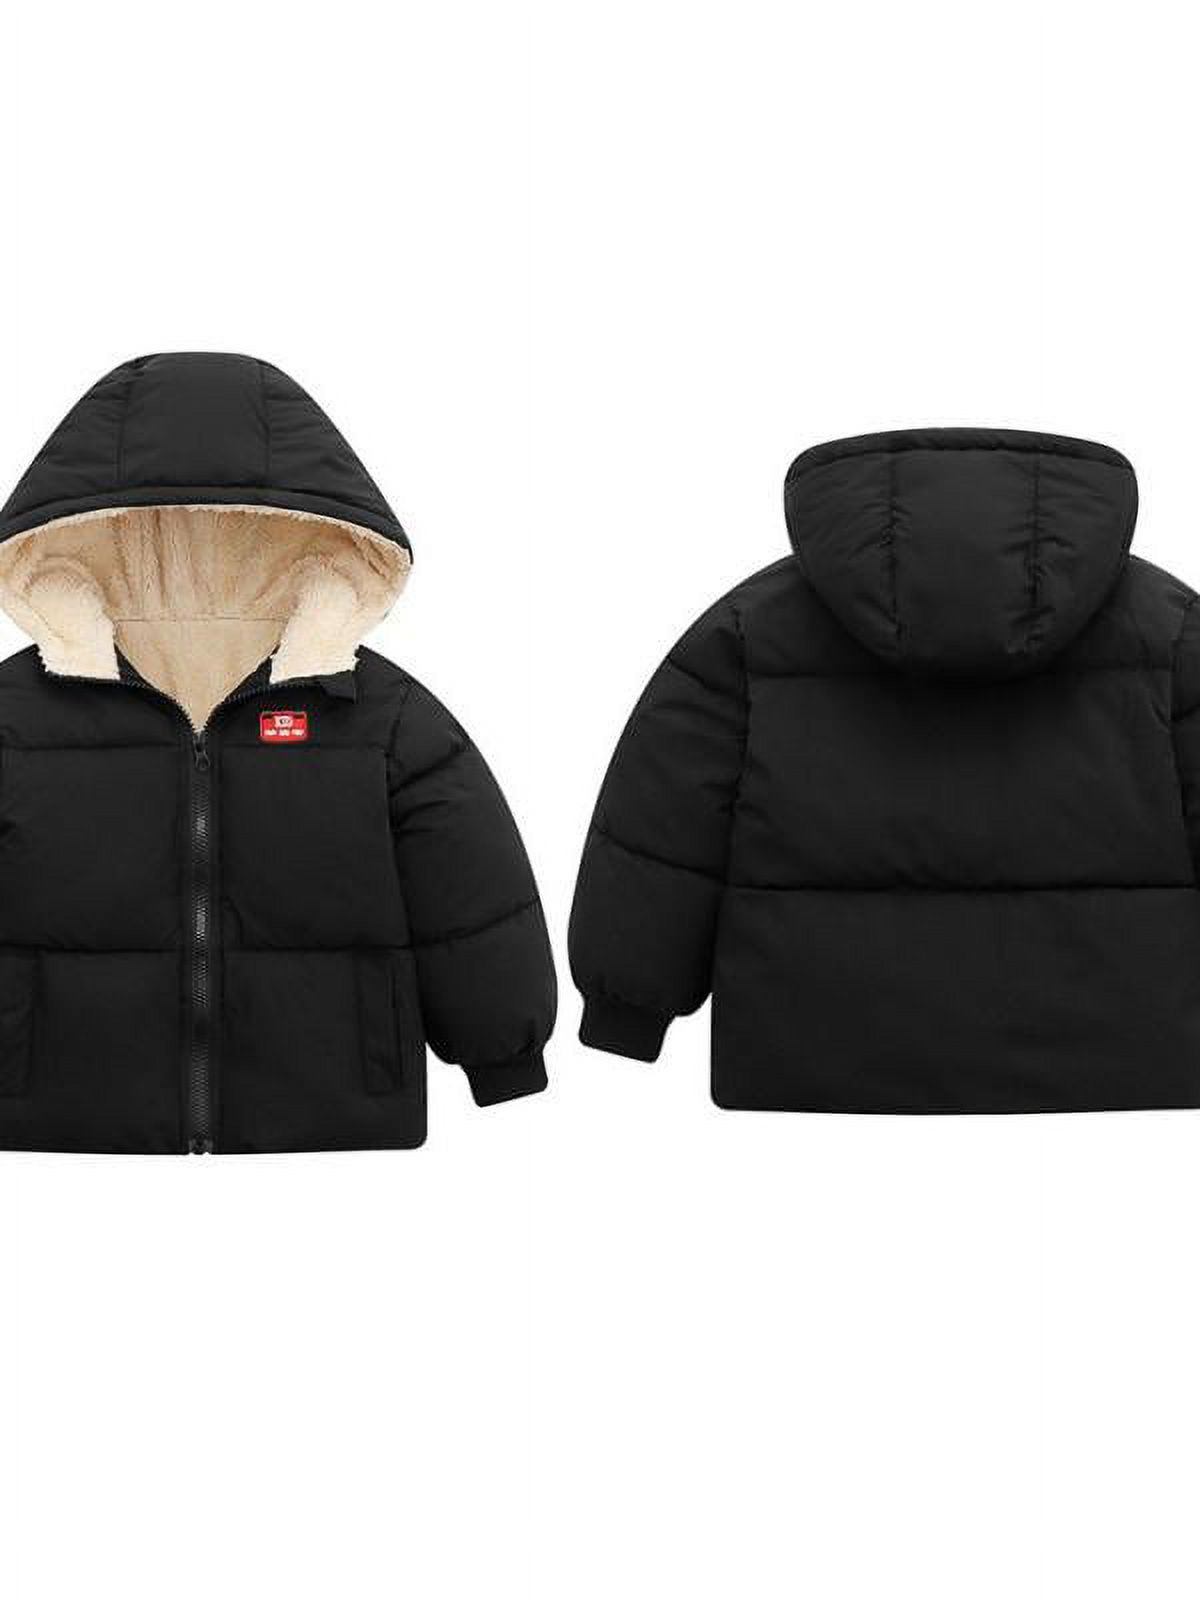 Topumt Boys Girls Hooded Down Jacket Winter Warm Fleece Coat Windproof Zipper Puffer Outerwear 1T-6T - image 3 of 3